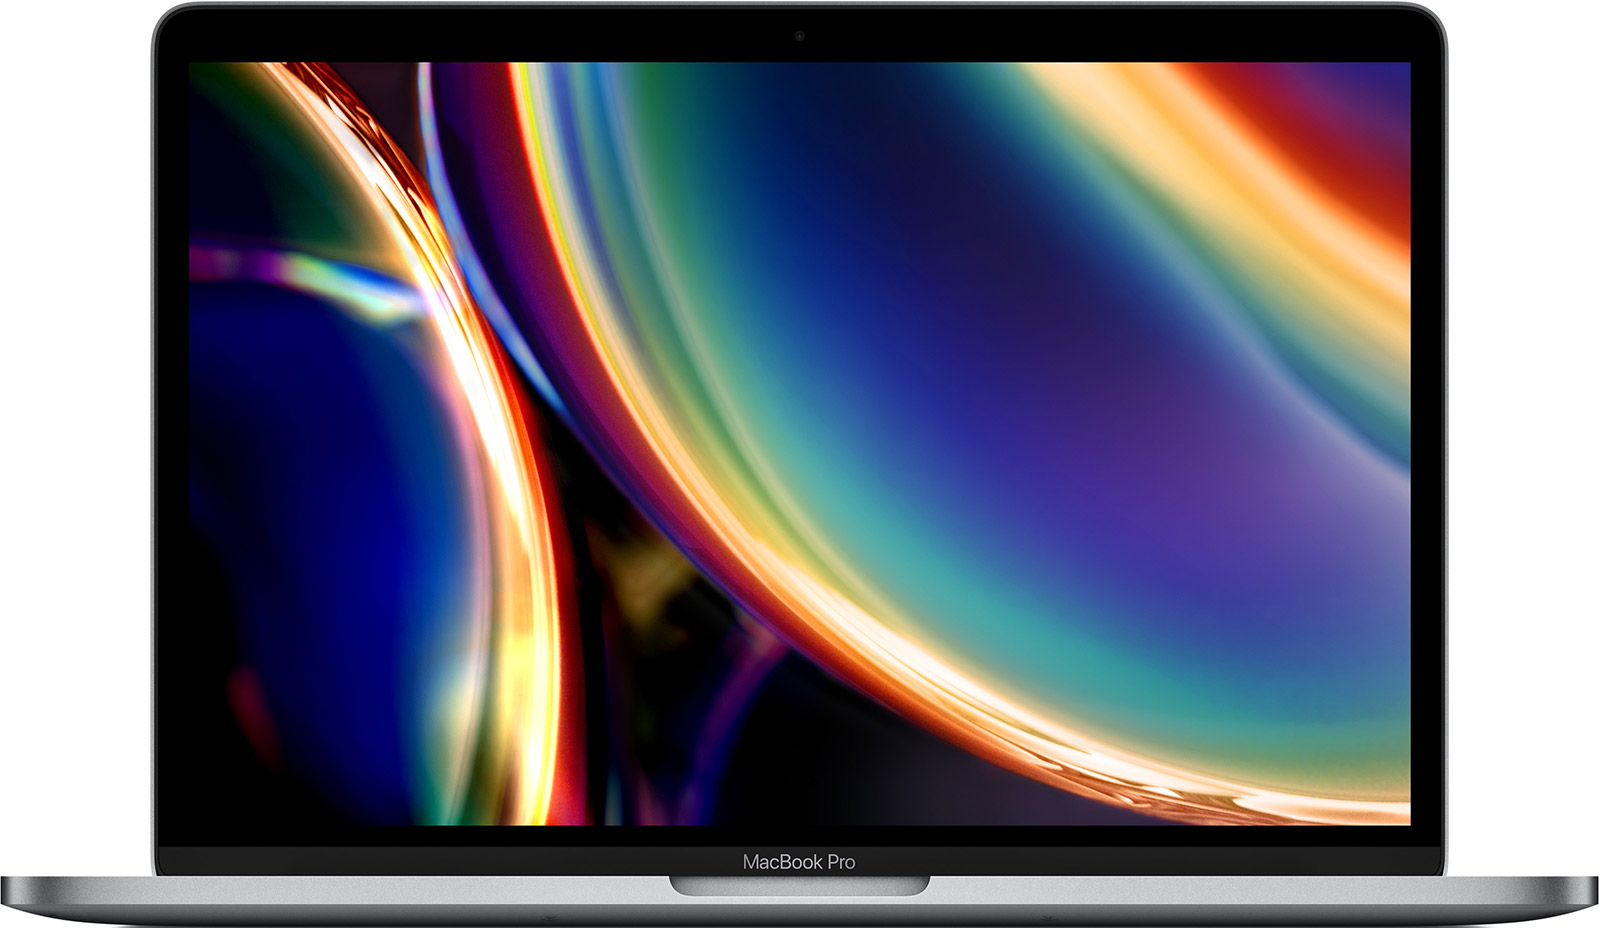 Apple-MacBook-Pro-13-3-2-GHz-Quad-Core-i5-16-GB-1-TB-Iris-Plus-Graphics-Space-01.jpg